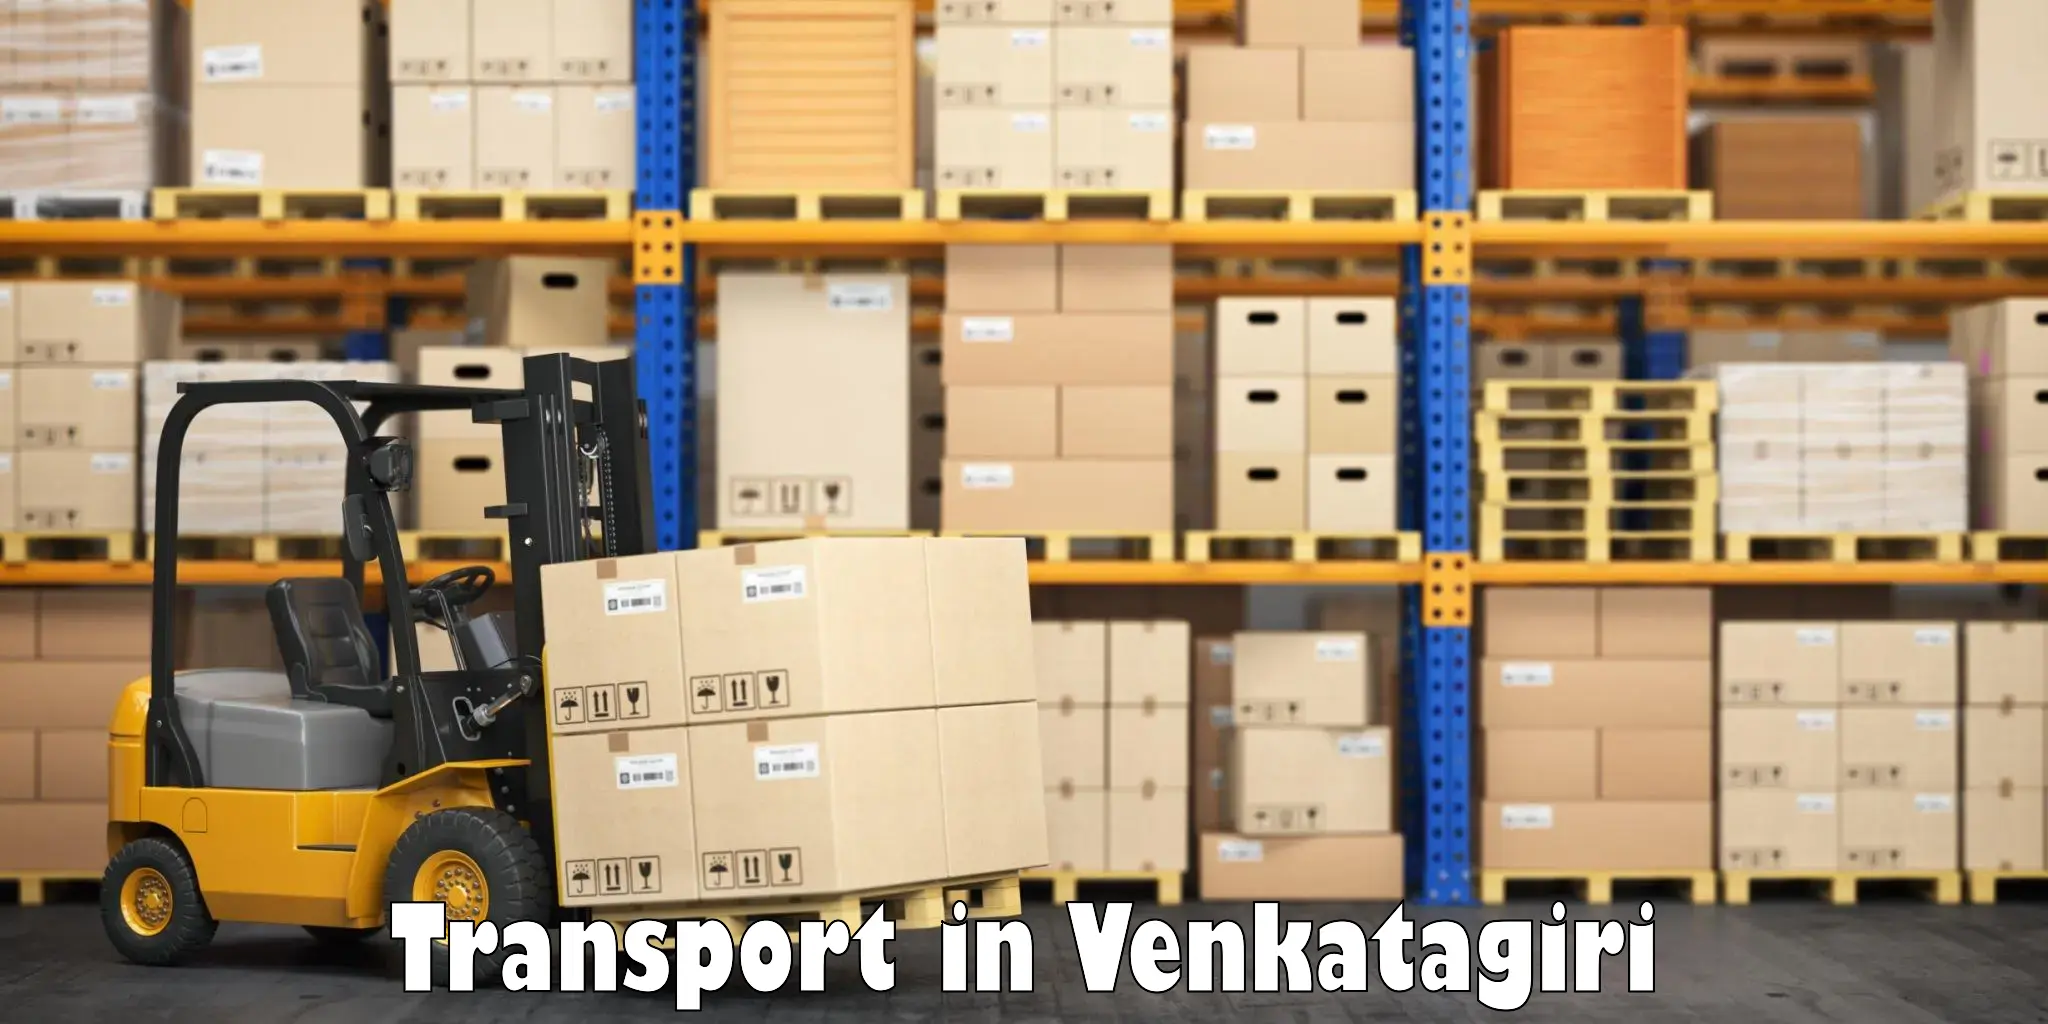 Shipping partner in Venkatagiri